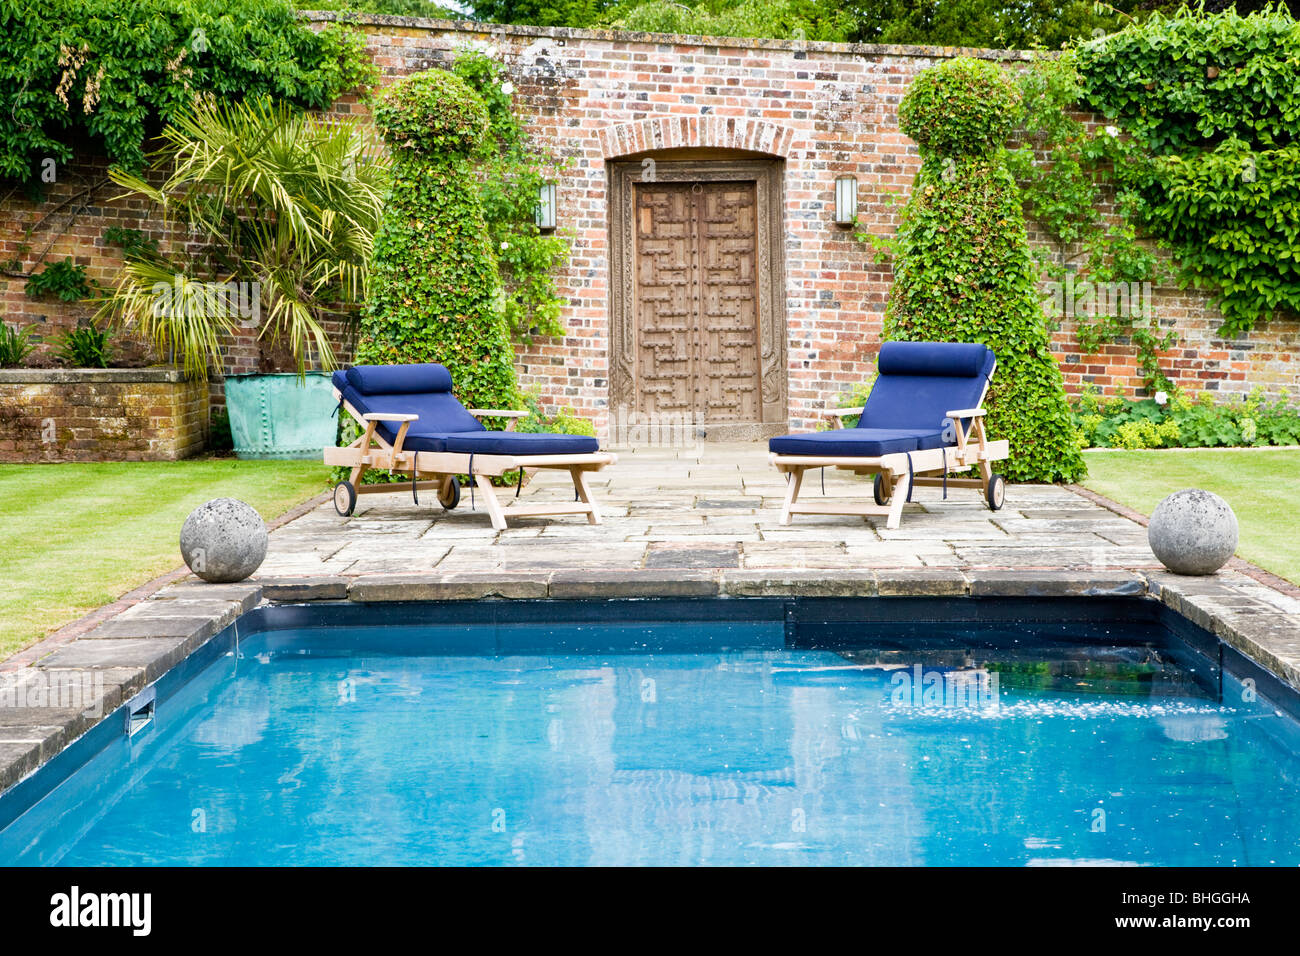 Piscina e sedie a sdraio in un giardino murato nella motivazione di una casa di campagna Inglese o manor Foto Stock